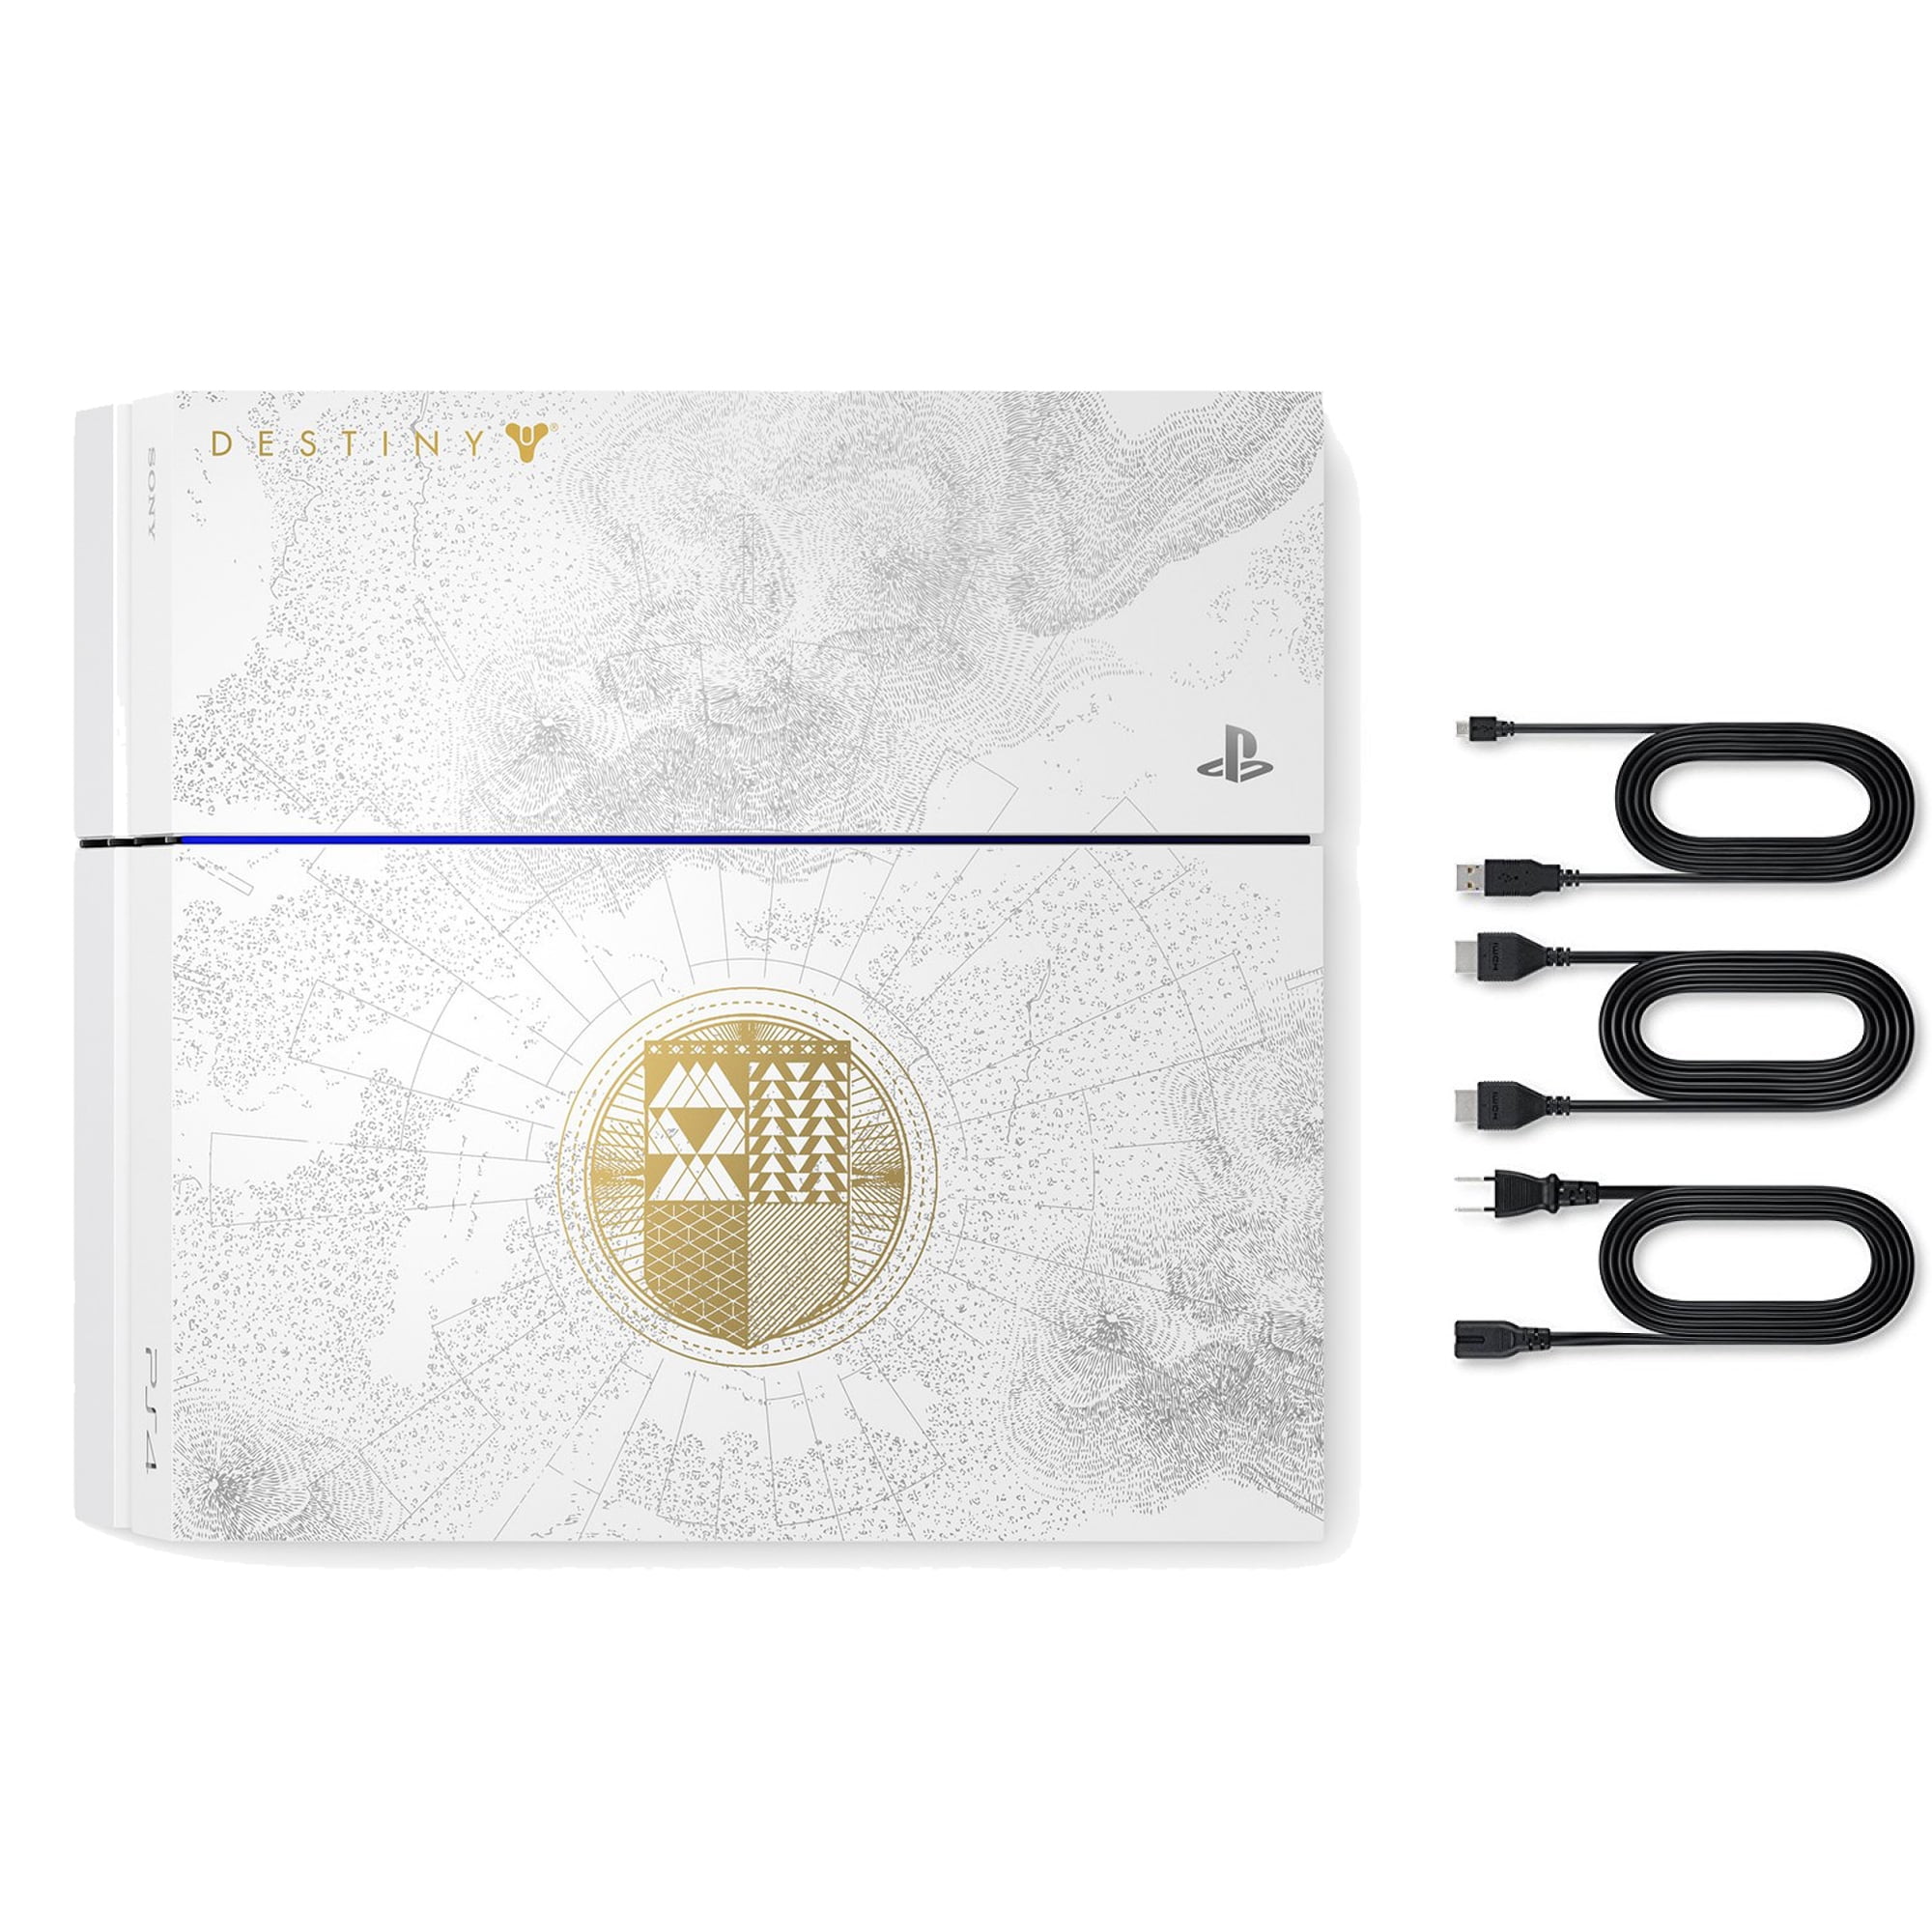 PS4 「ペルソナ5」 LIMITED EDITION 500GB ホワイト